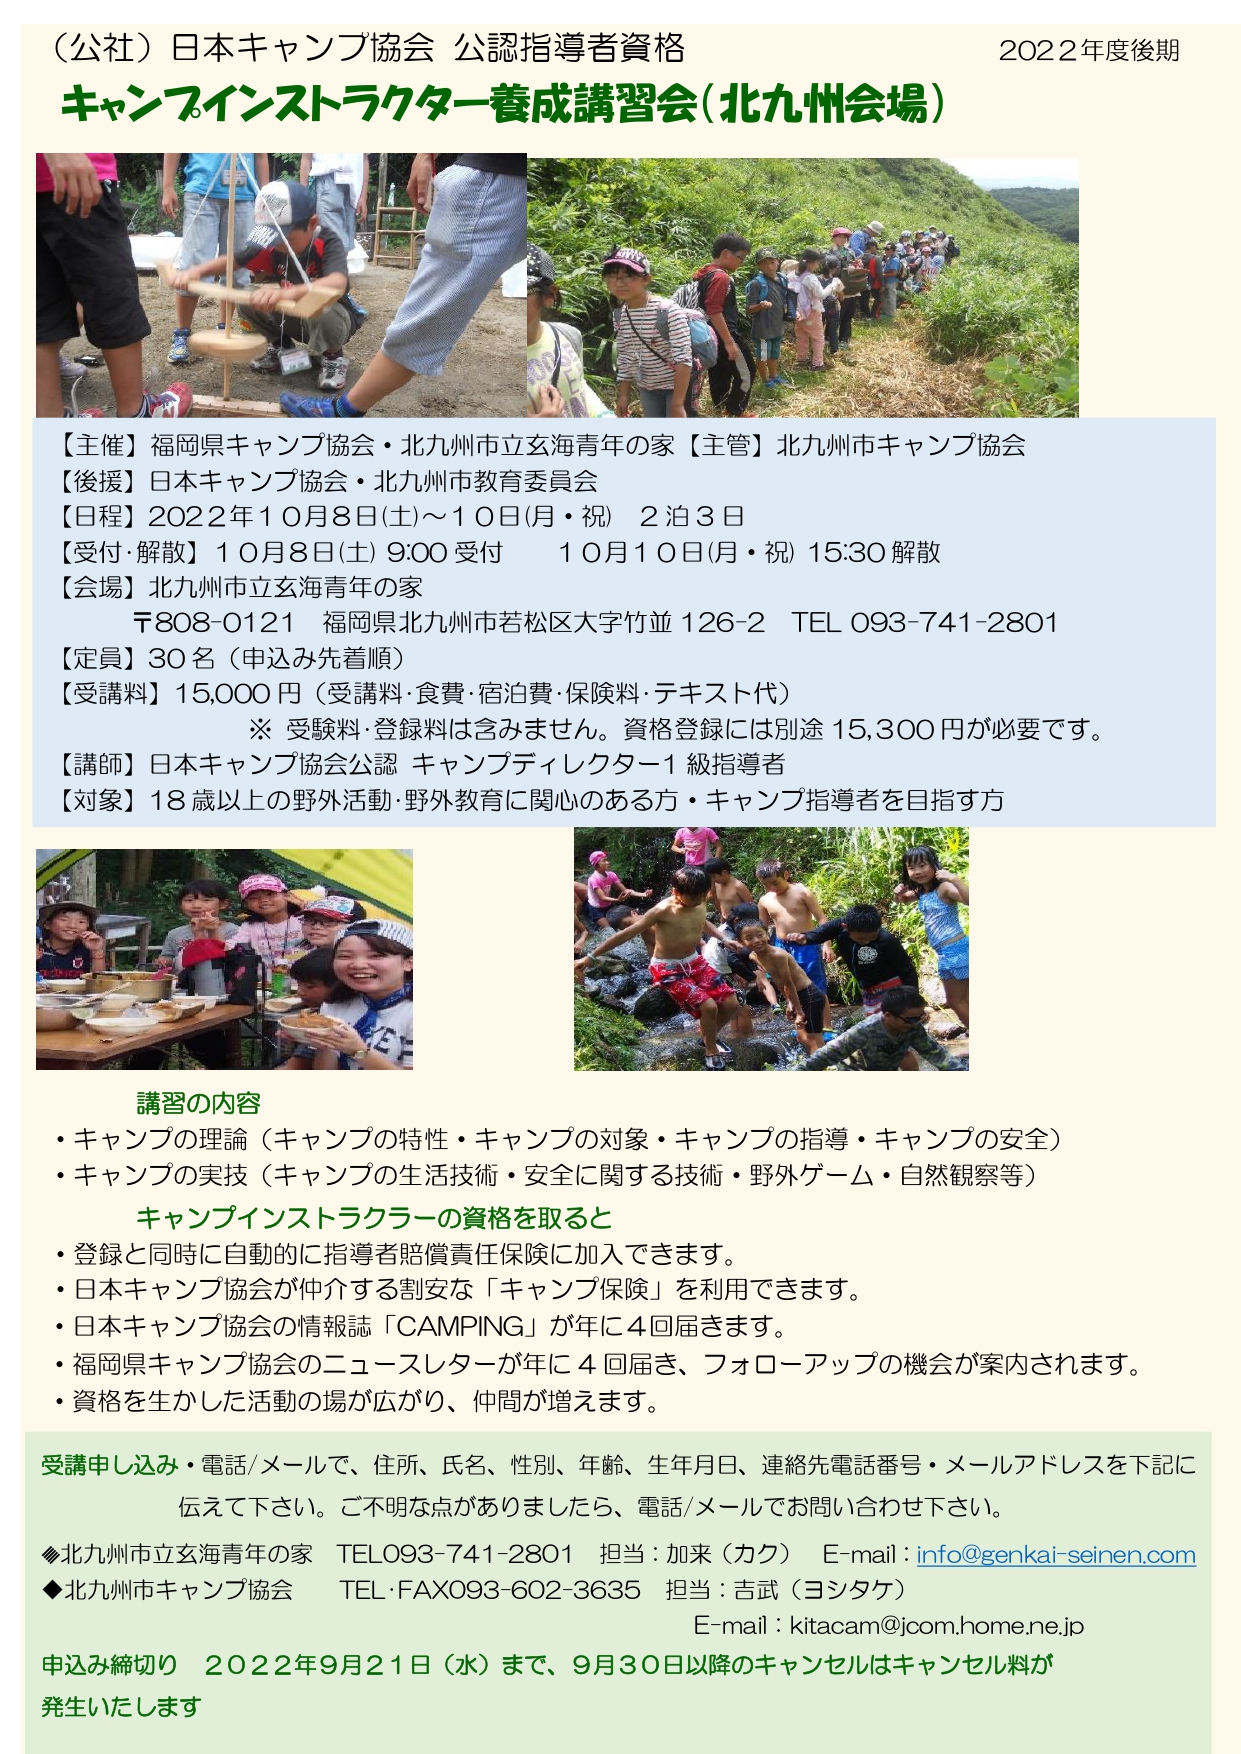 福岡：キャンプインストラクター養成講習会 @ 北九州市立玄海青年の家